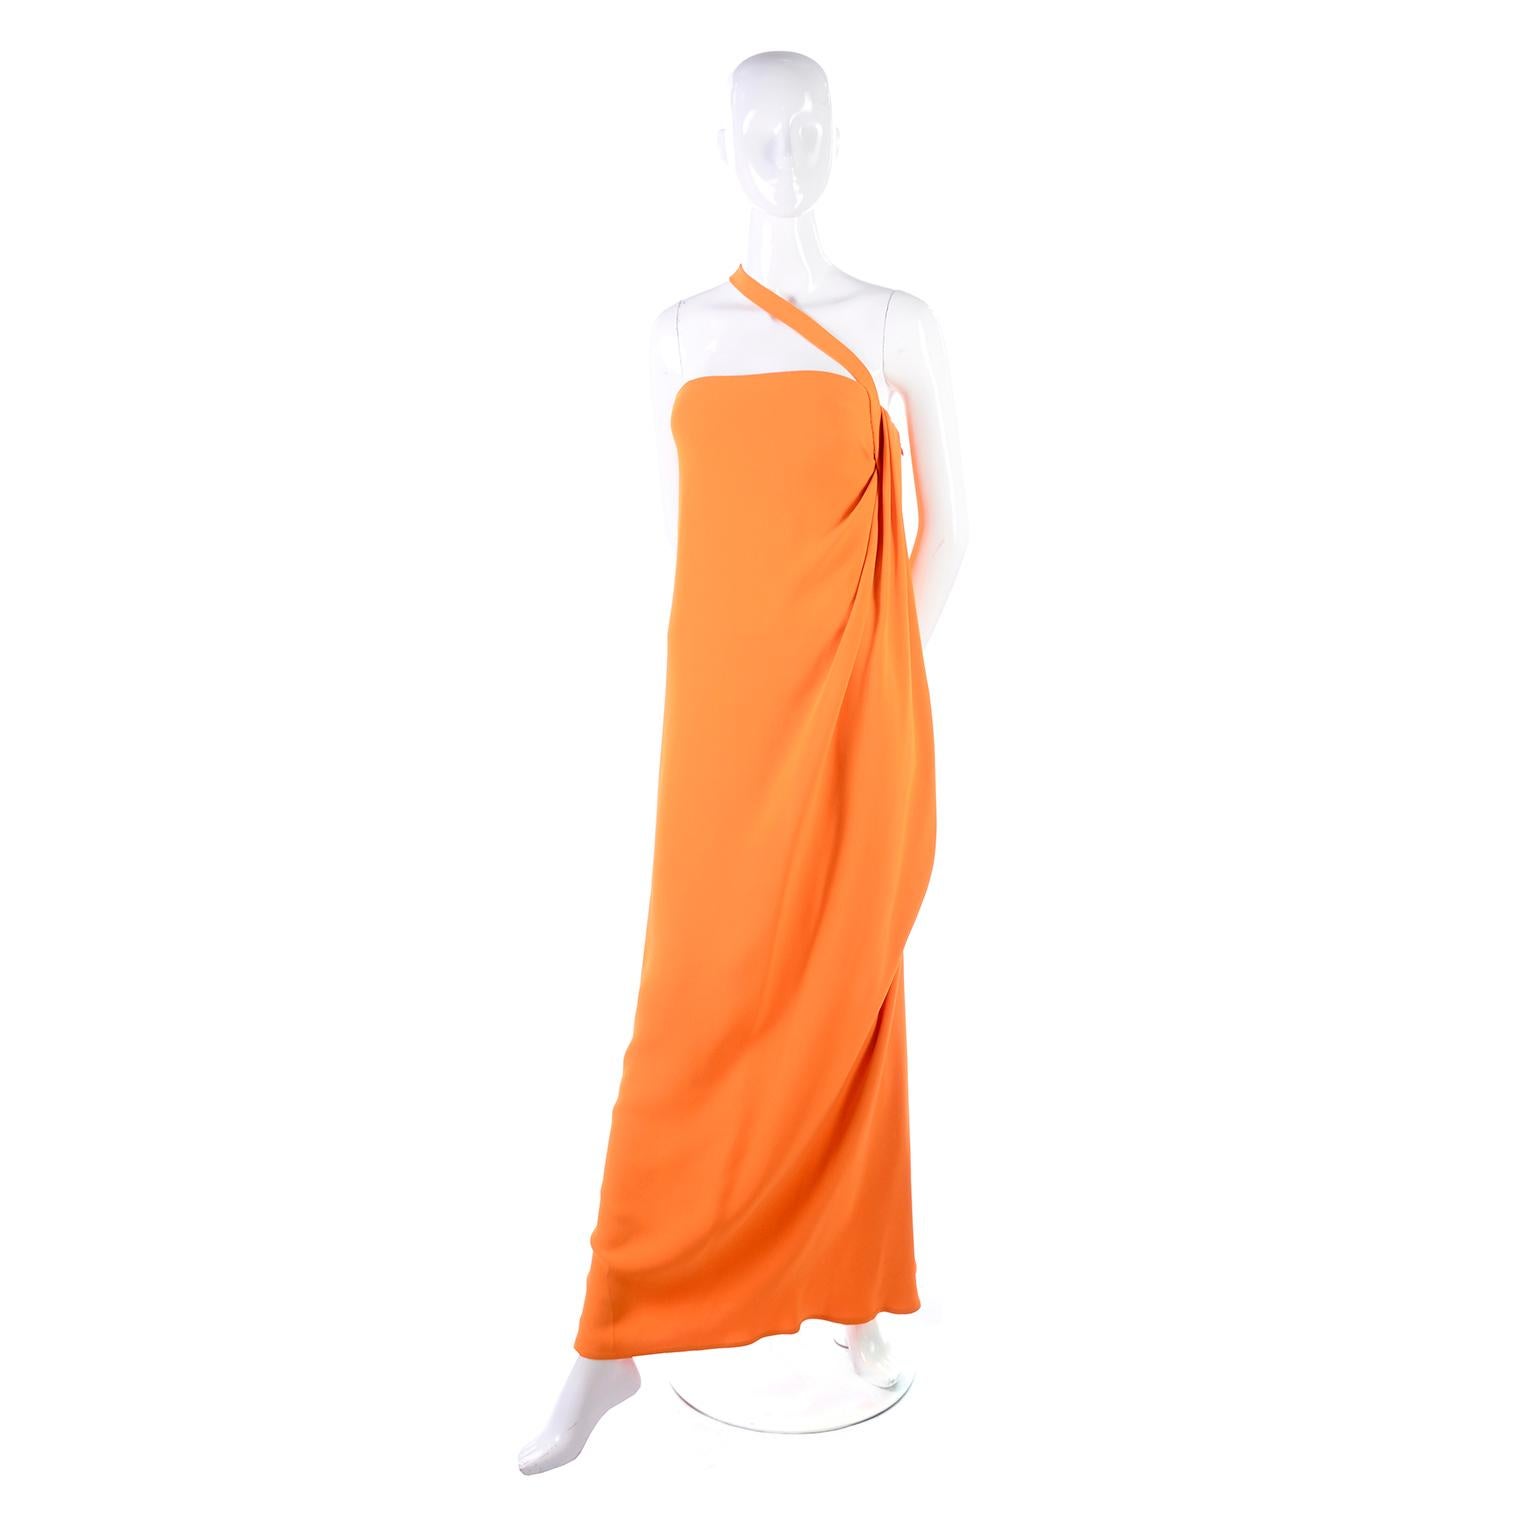 Women's or Men's Oscar de la Renta 2008 Orange Silk Jersey Grecian Style Dress W Asymmetric strap